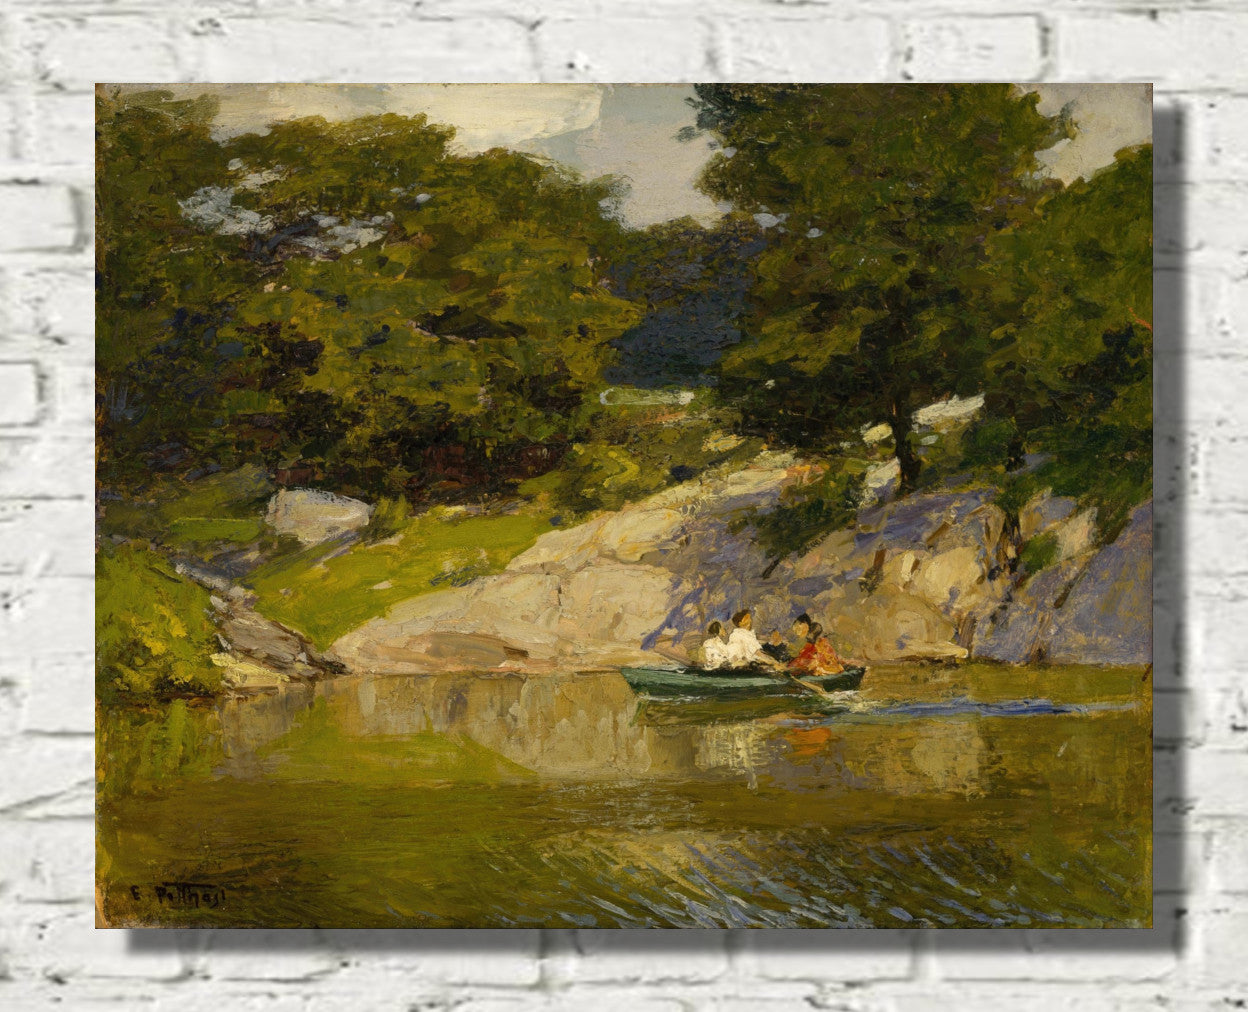 Boating in Central Park (1900-1905) by Edward Henry Potthast